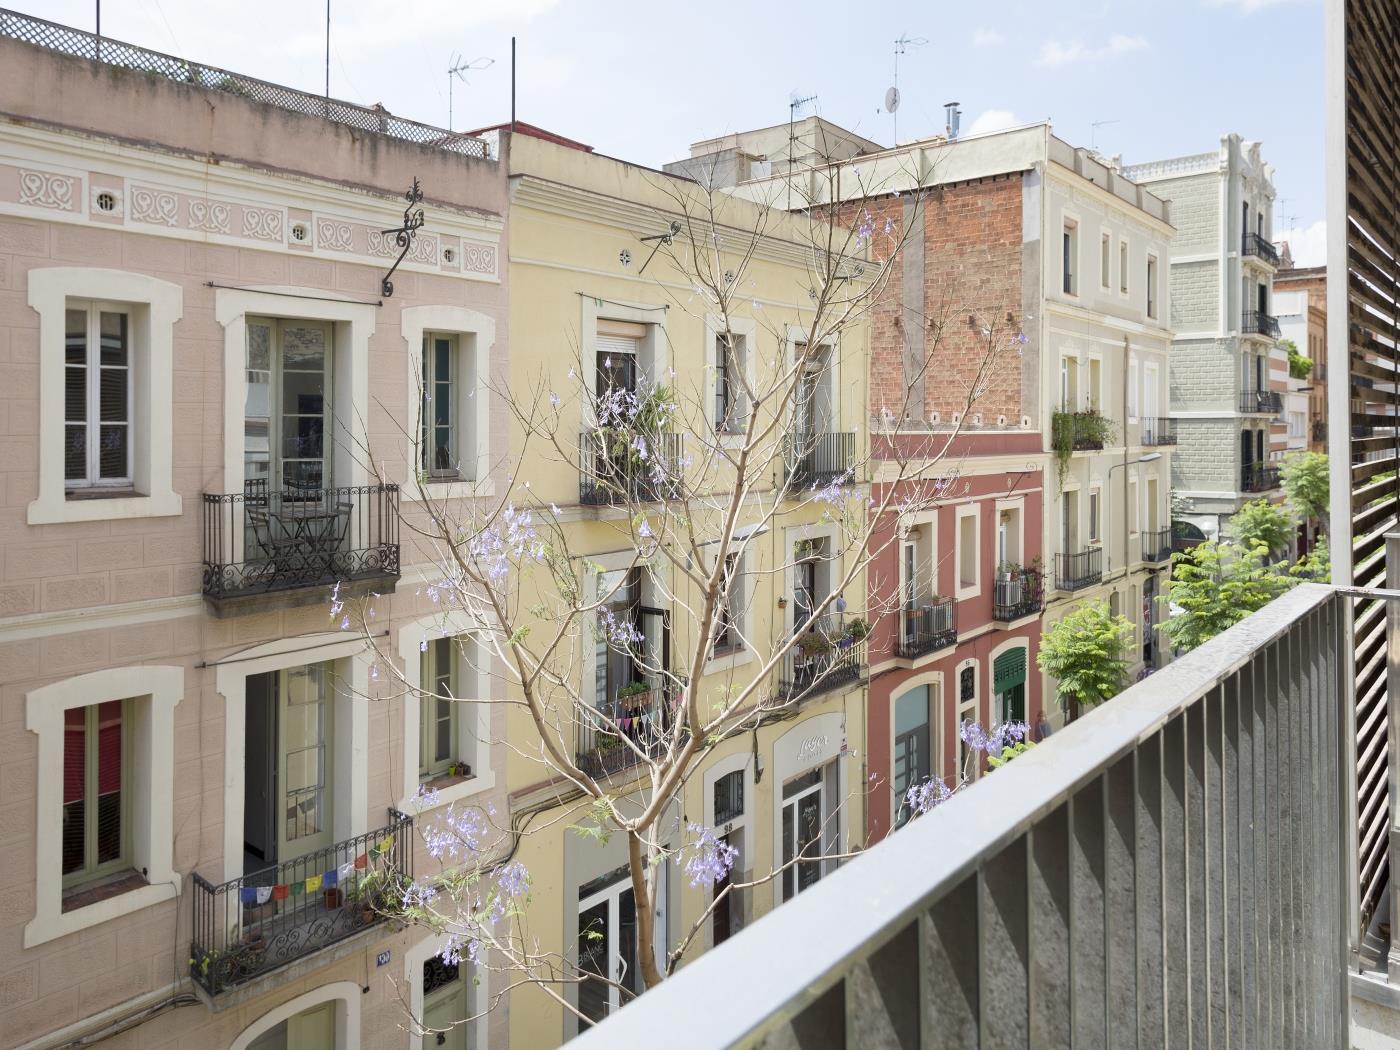 Appartement avec Terrasse Privée et Piscine situé à Gracia pour 6 - My Space Barcelona Appartements